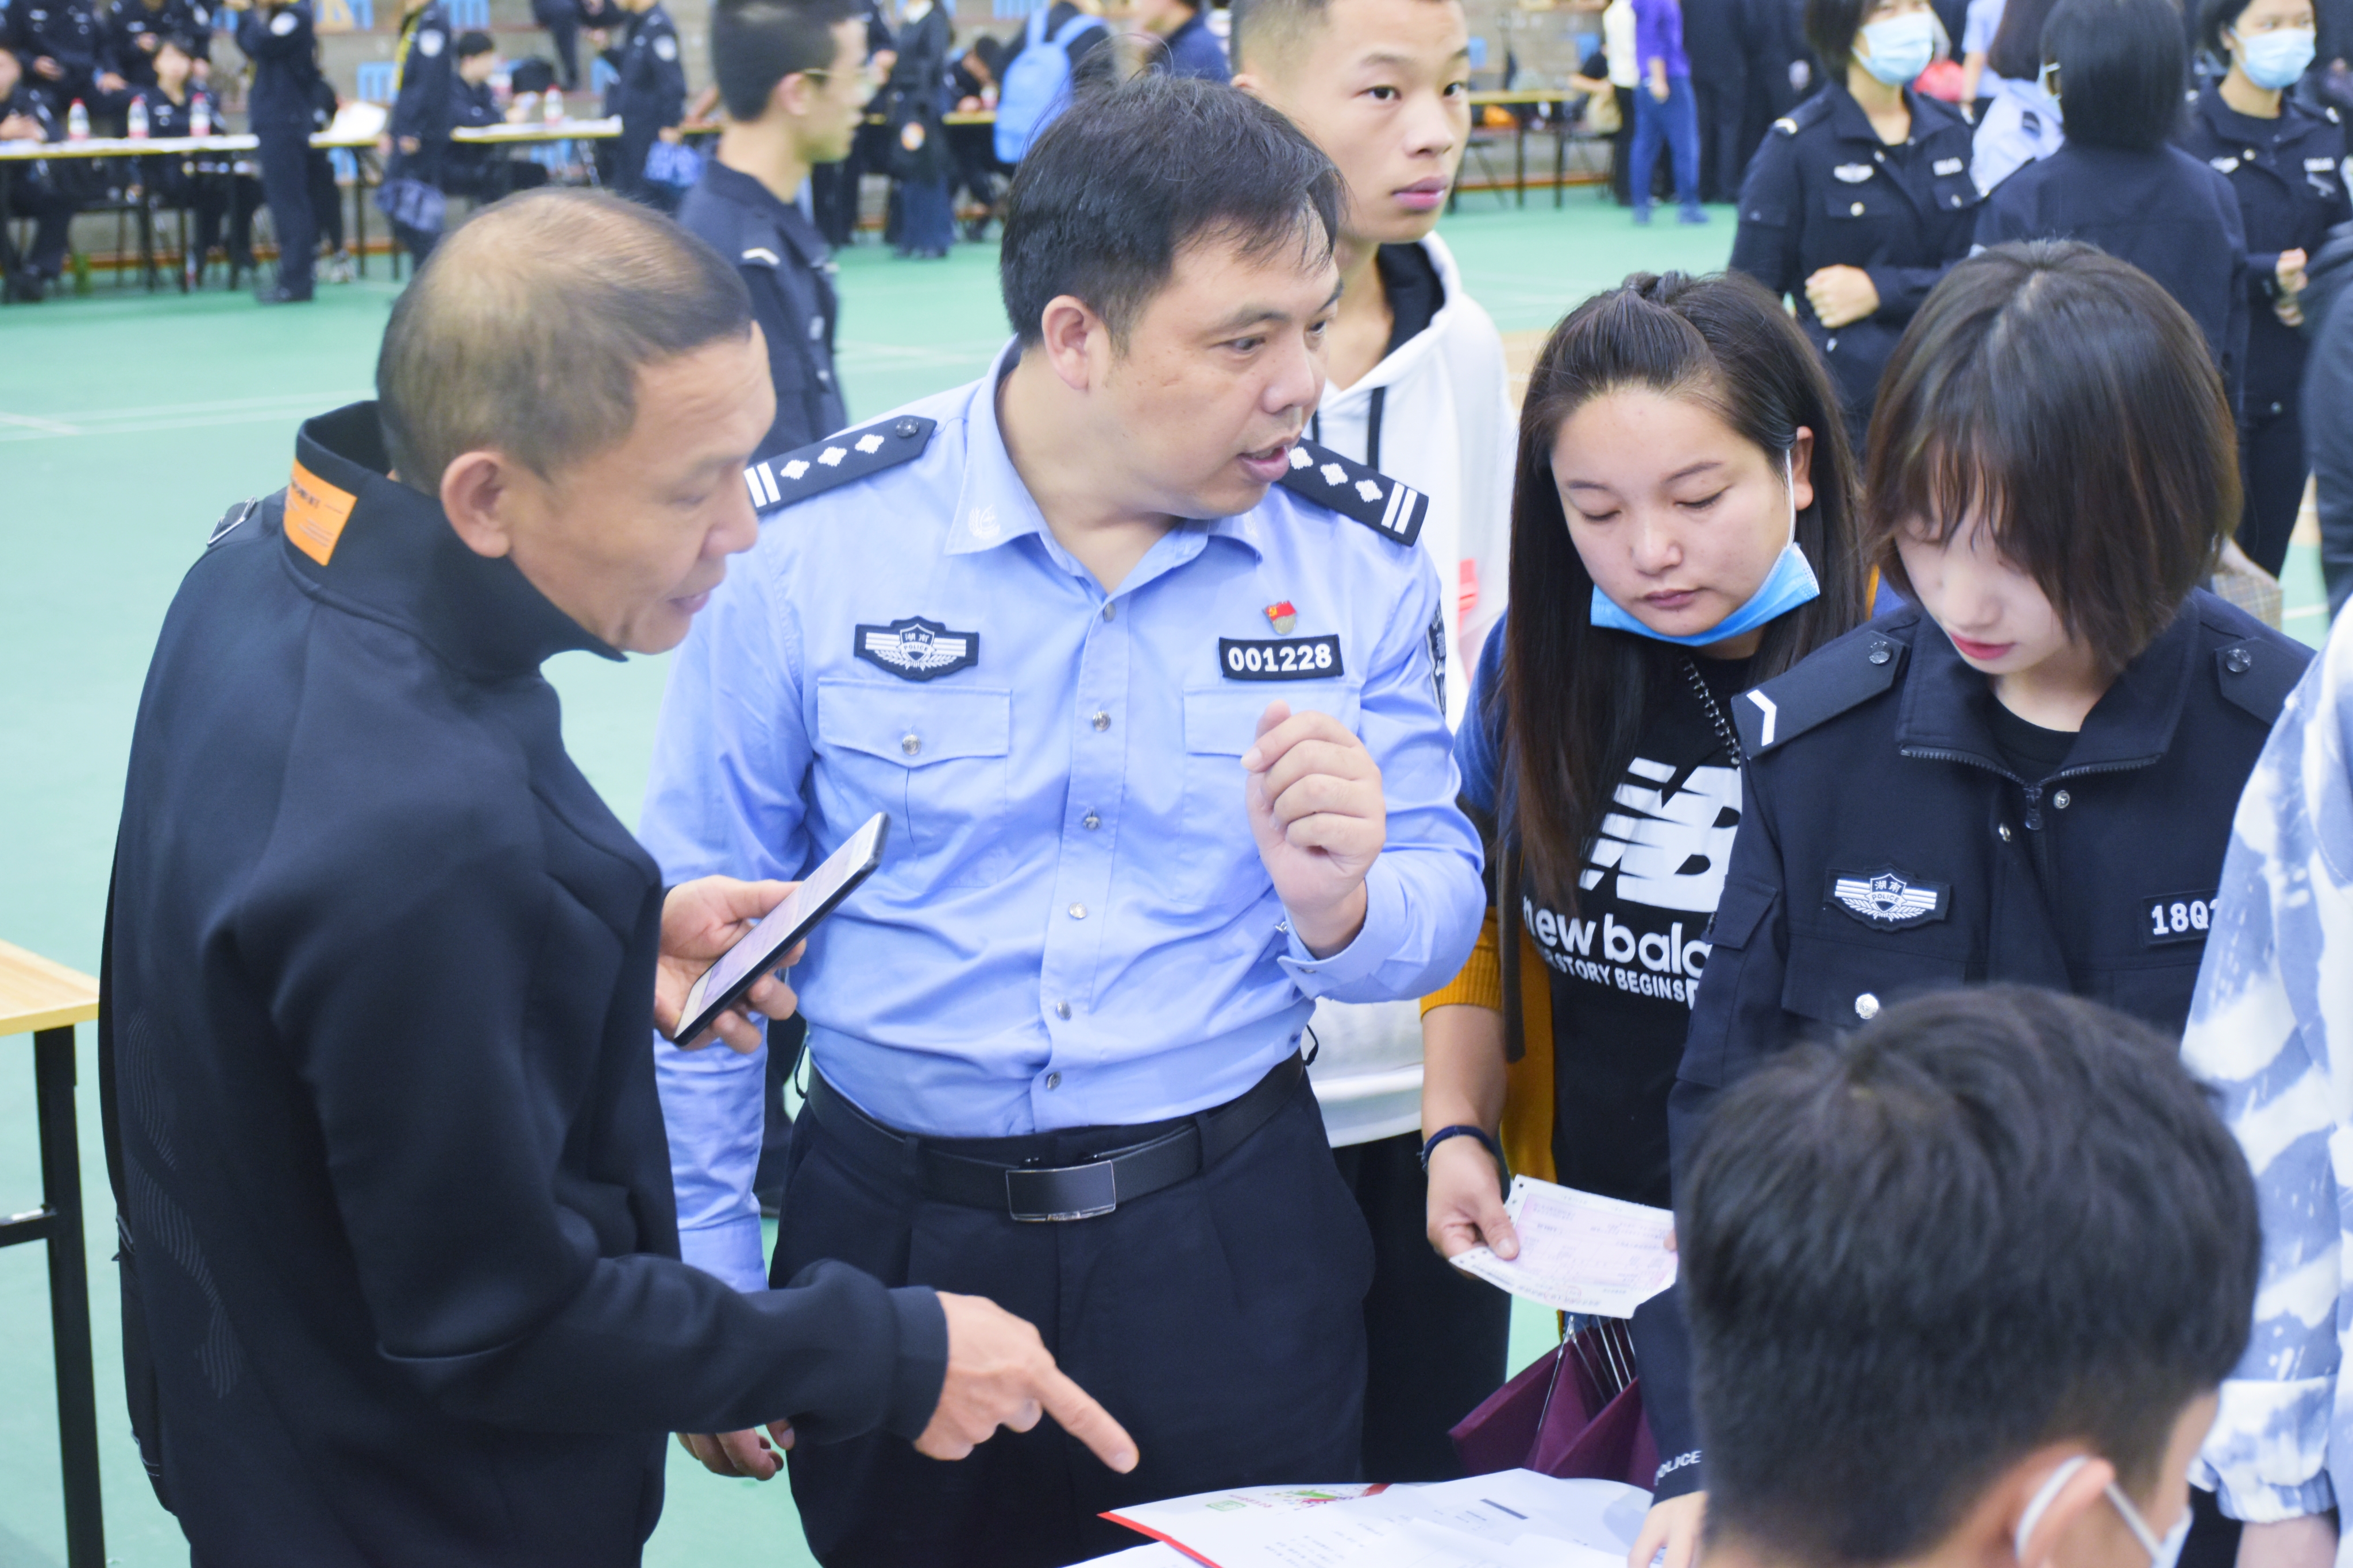 迎警院之新,绽团结之花 - 湖南警察学院法律学生大队